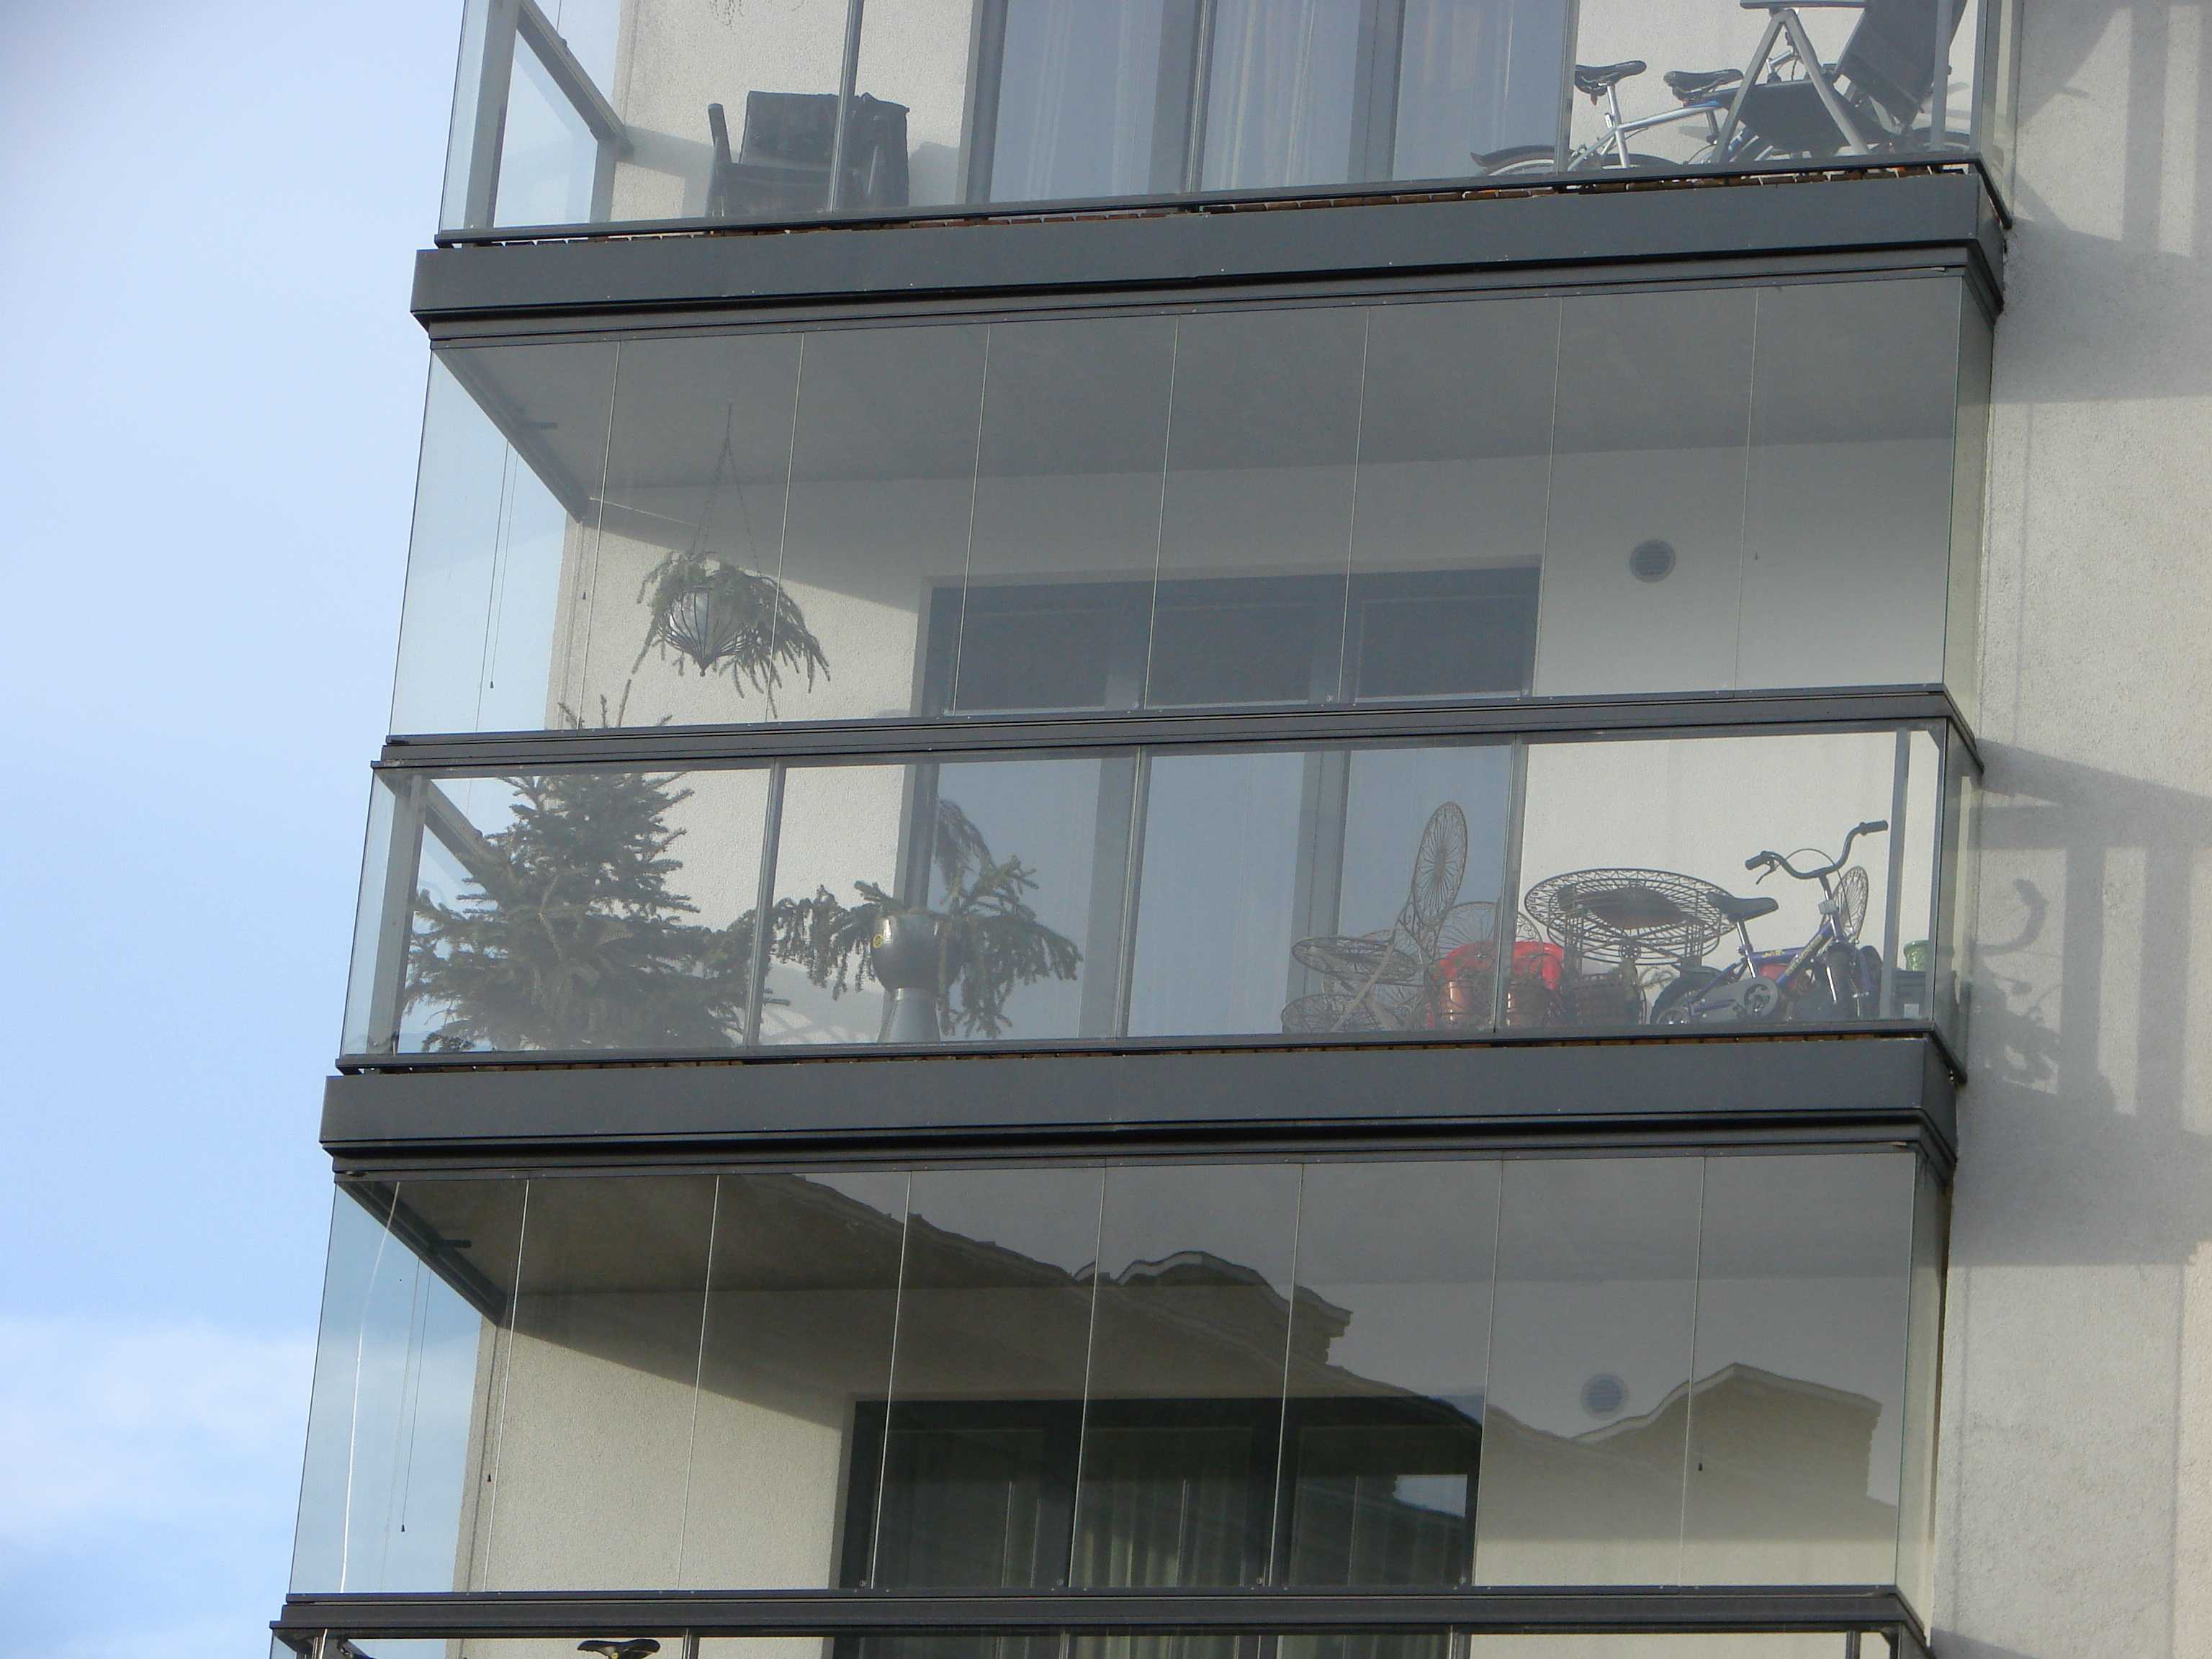 Особенности выбора лоджии или балкона с панорамным остеклением, какое лучше использовать